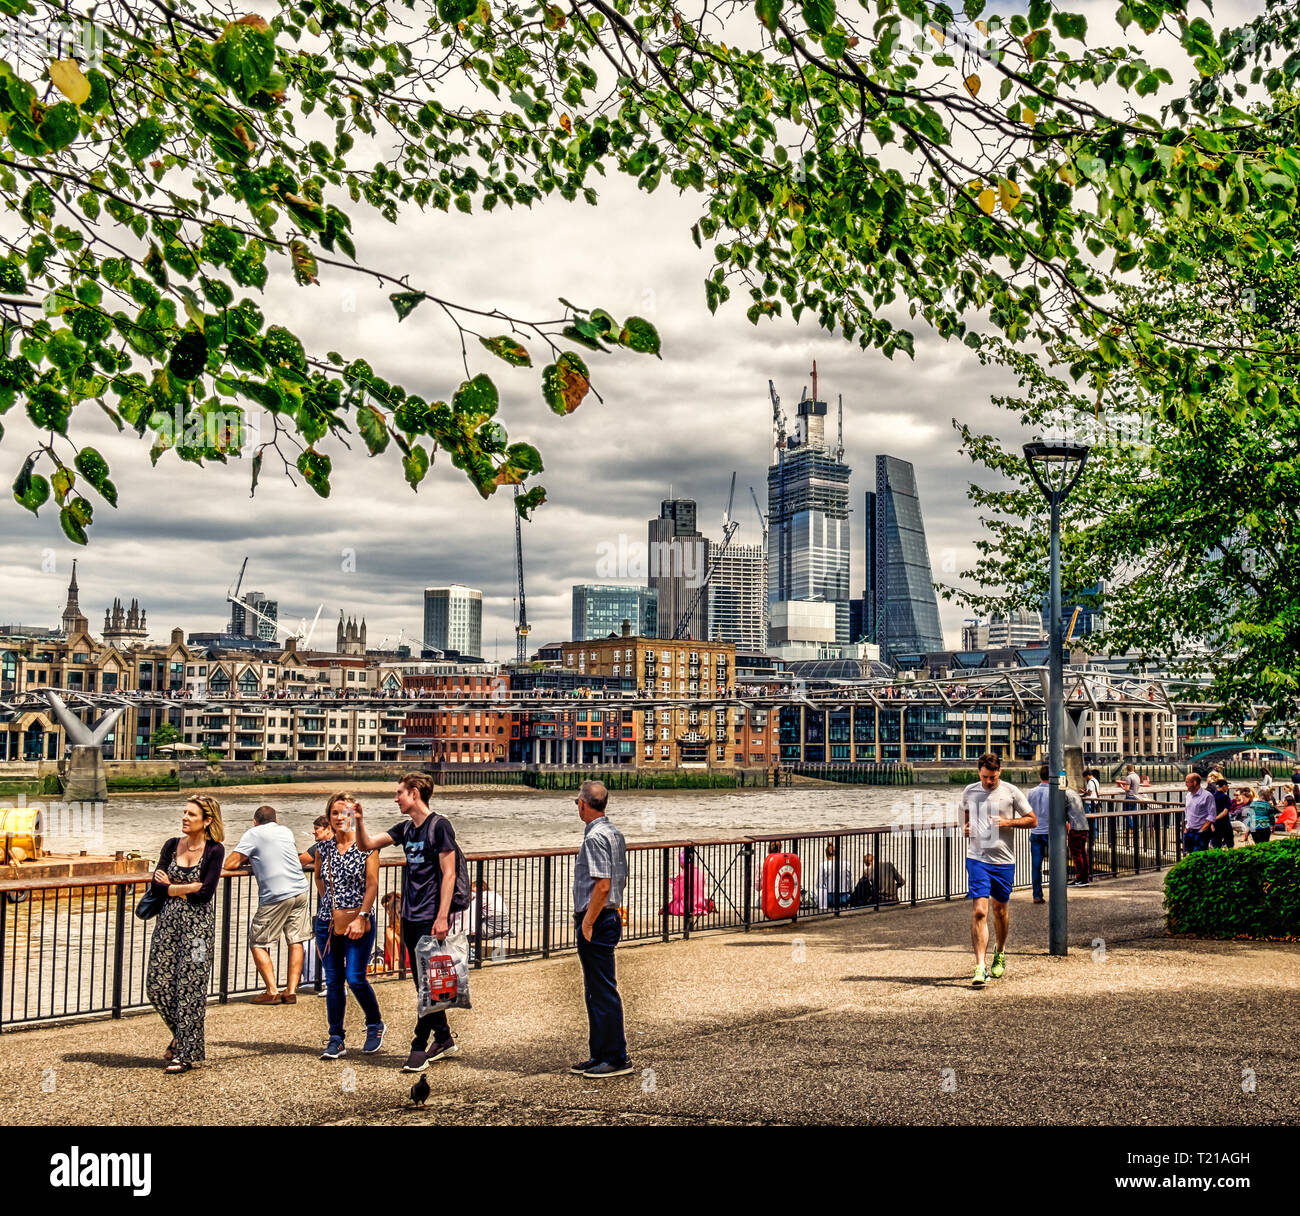 Londres, Royaume-Uni, août 2018, scène urbaine en été près de la Tamise près du pont du Millénaire, Angleterre Banque D'Images